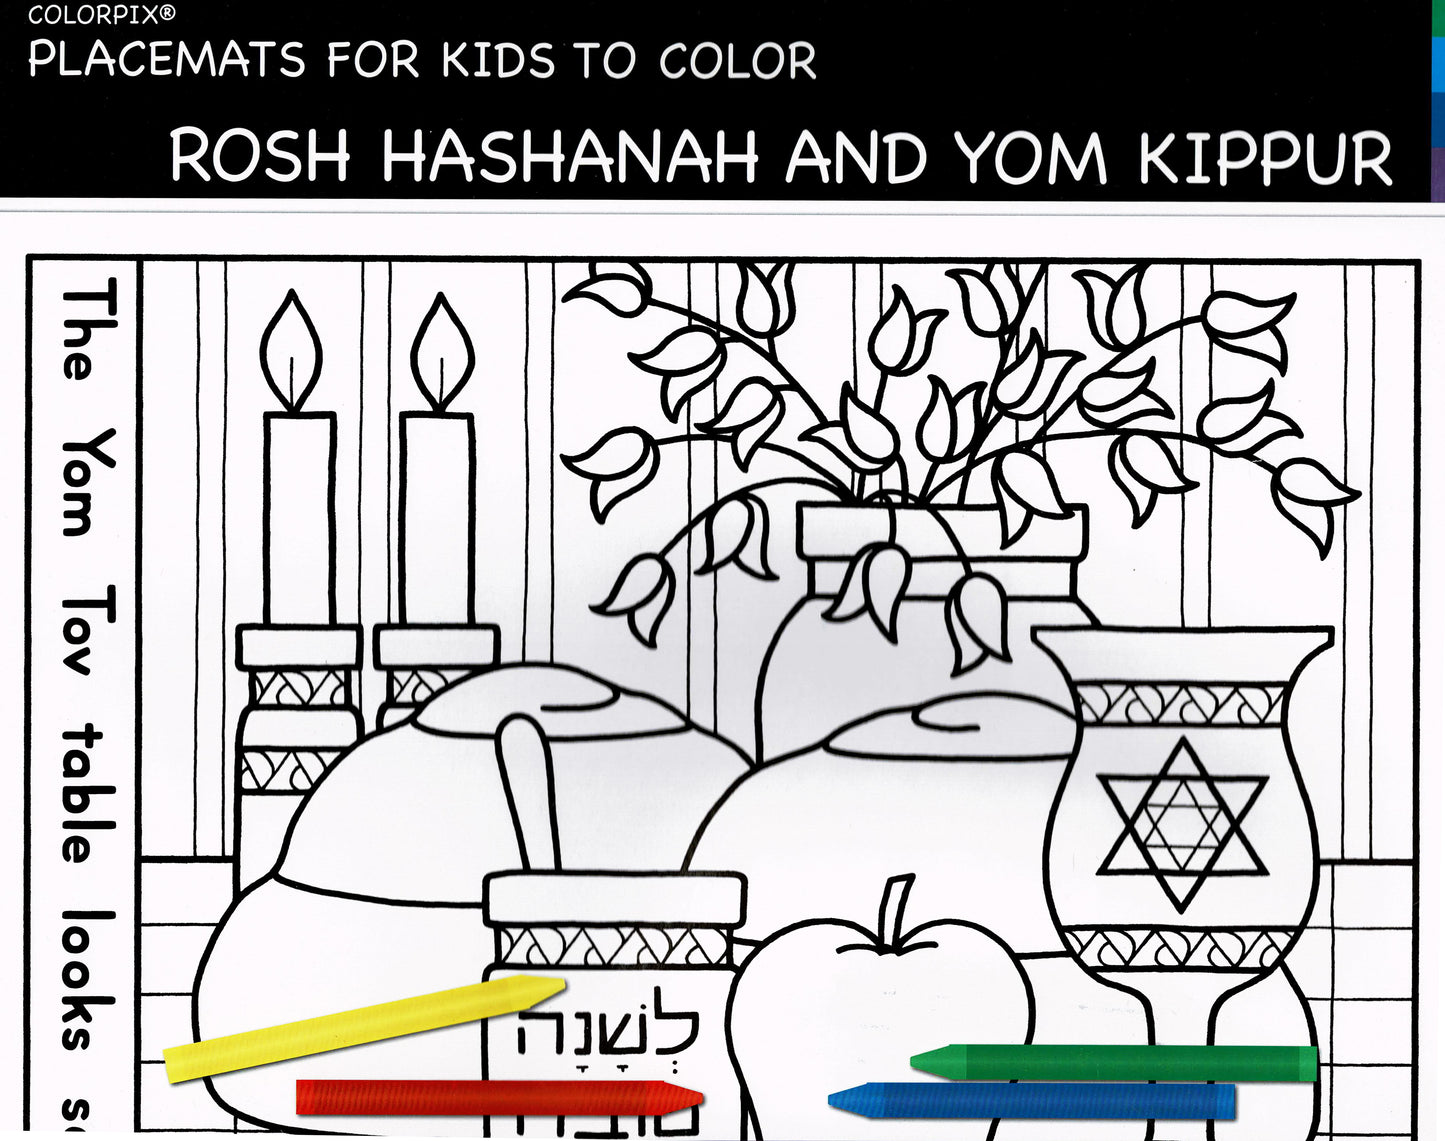 Rosh Hashanah and Yom Kippur Placemats